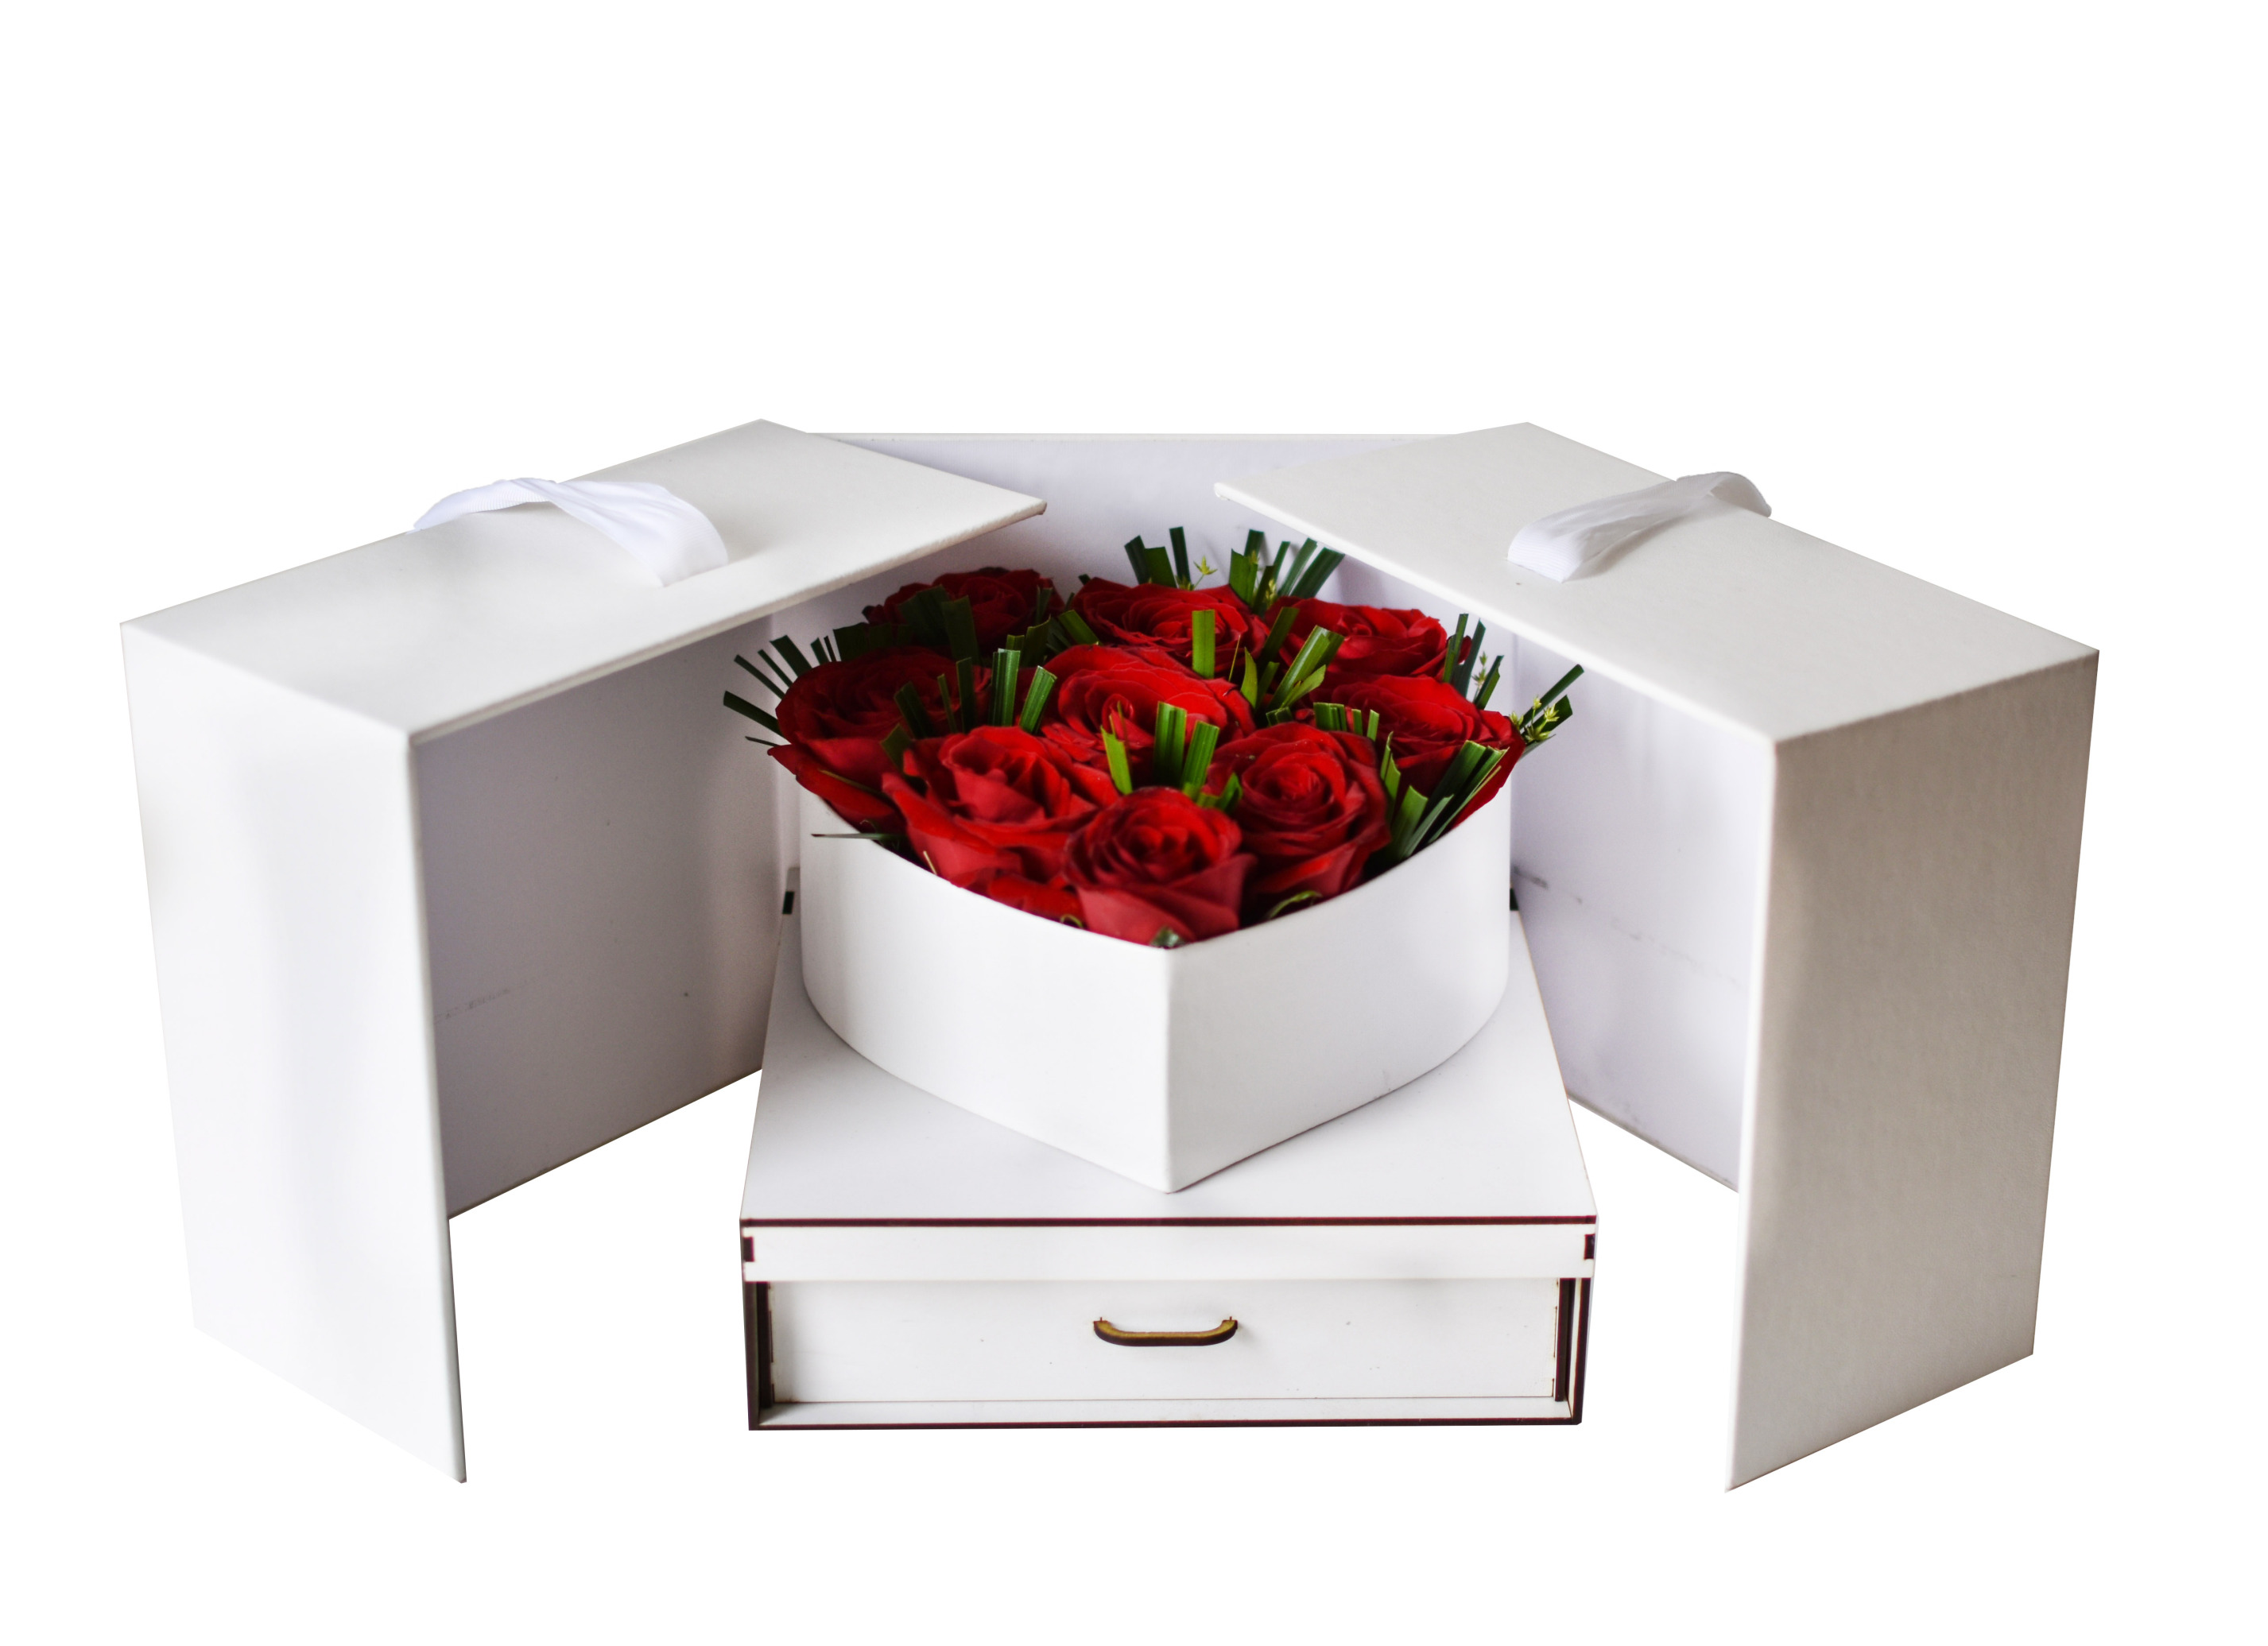  خرید و قیمت باکس گل نشاط سفارش باکس گل رز قرمز ارسال رایگان باکس گل قیمت باکس گل رز باکس رز ارزان گل ایرانی گلفروشی 